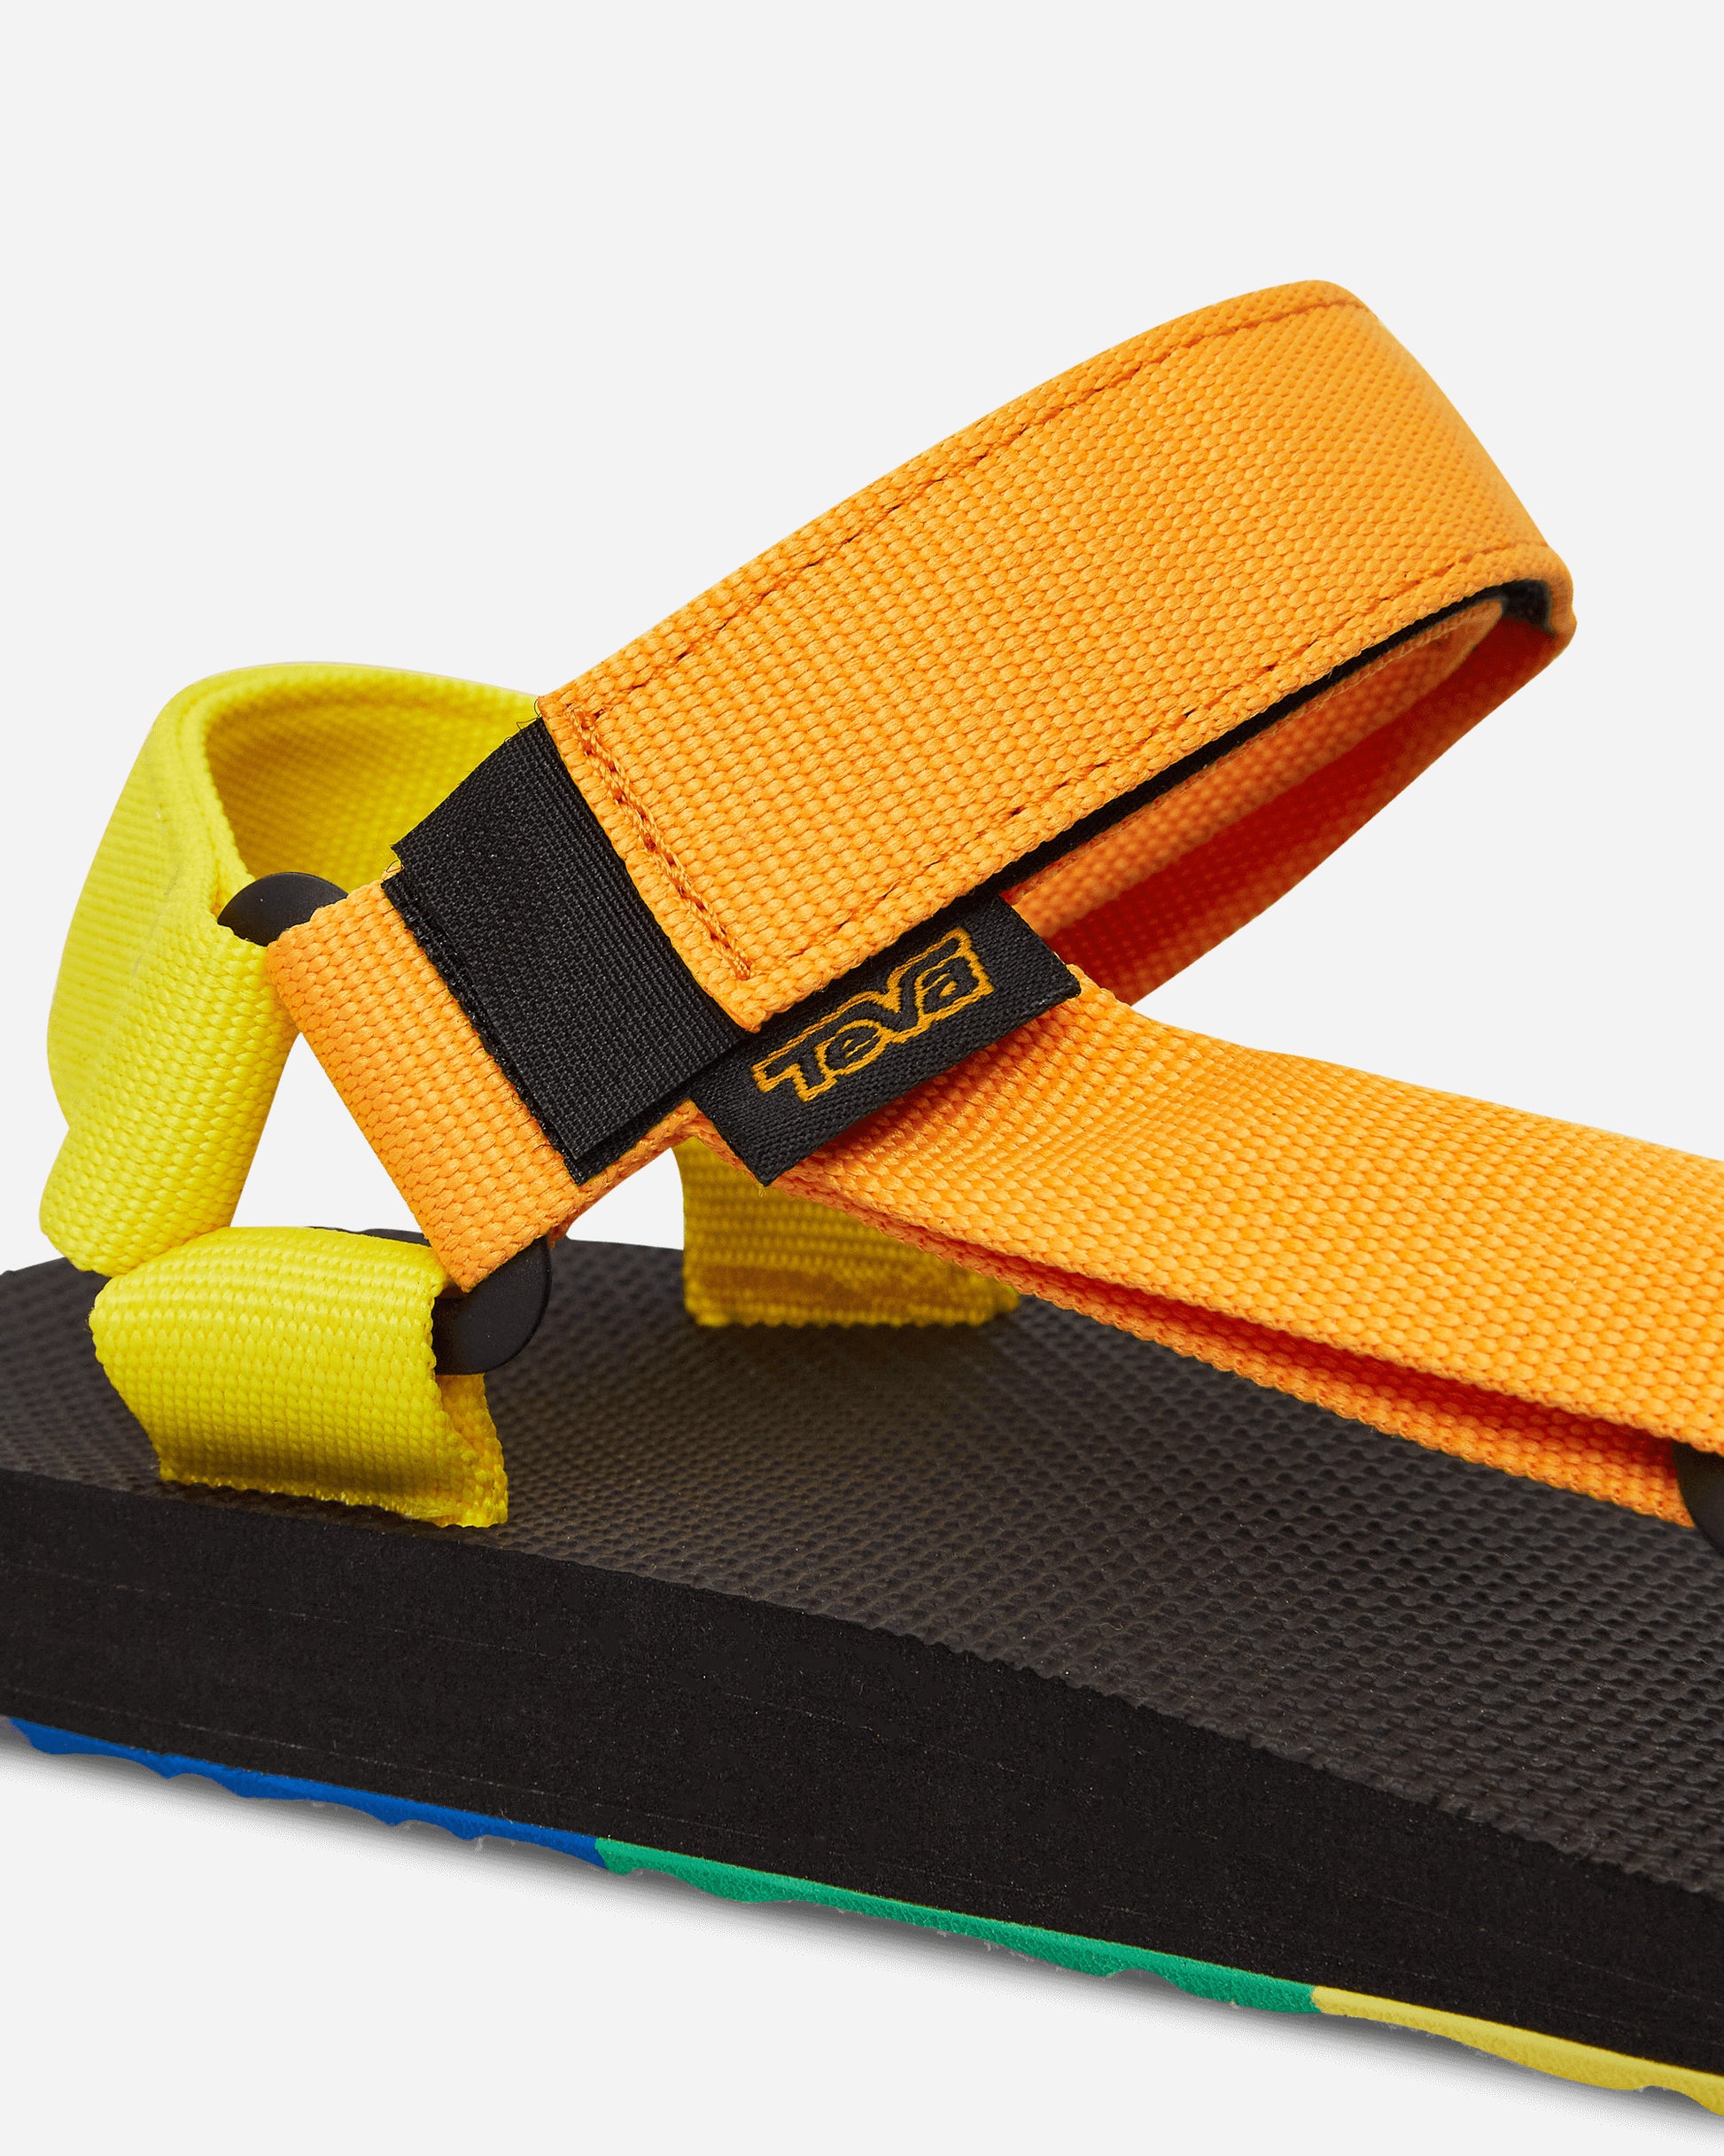 Teva Original Universal Pride Rainbow Multi Sandals and Slides Sandal 1131412 RMLT